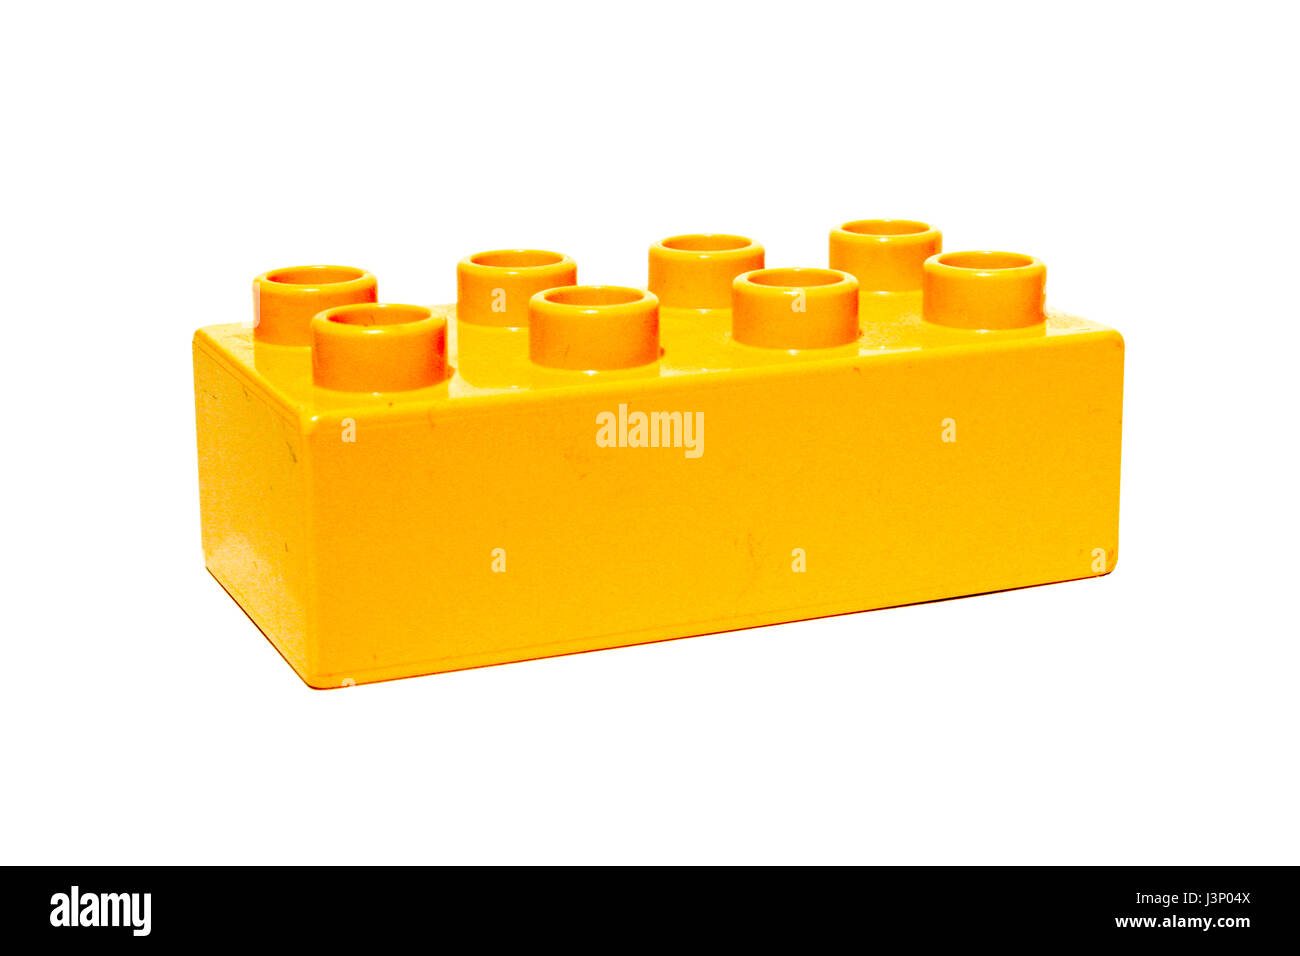 Farbigen Kunststoff Spielzeug Gebäude Kinder- Bausteine auf weißem  Hintergrund Stockfotografie - Alamy